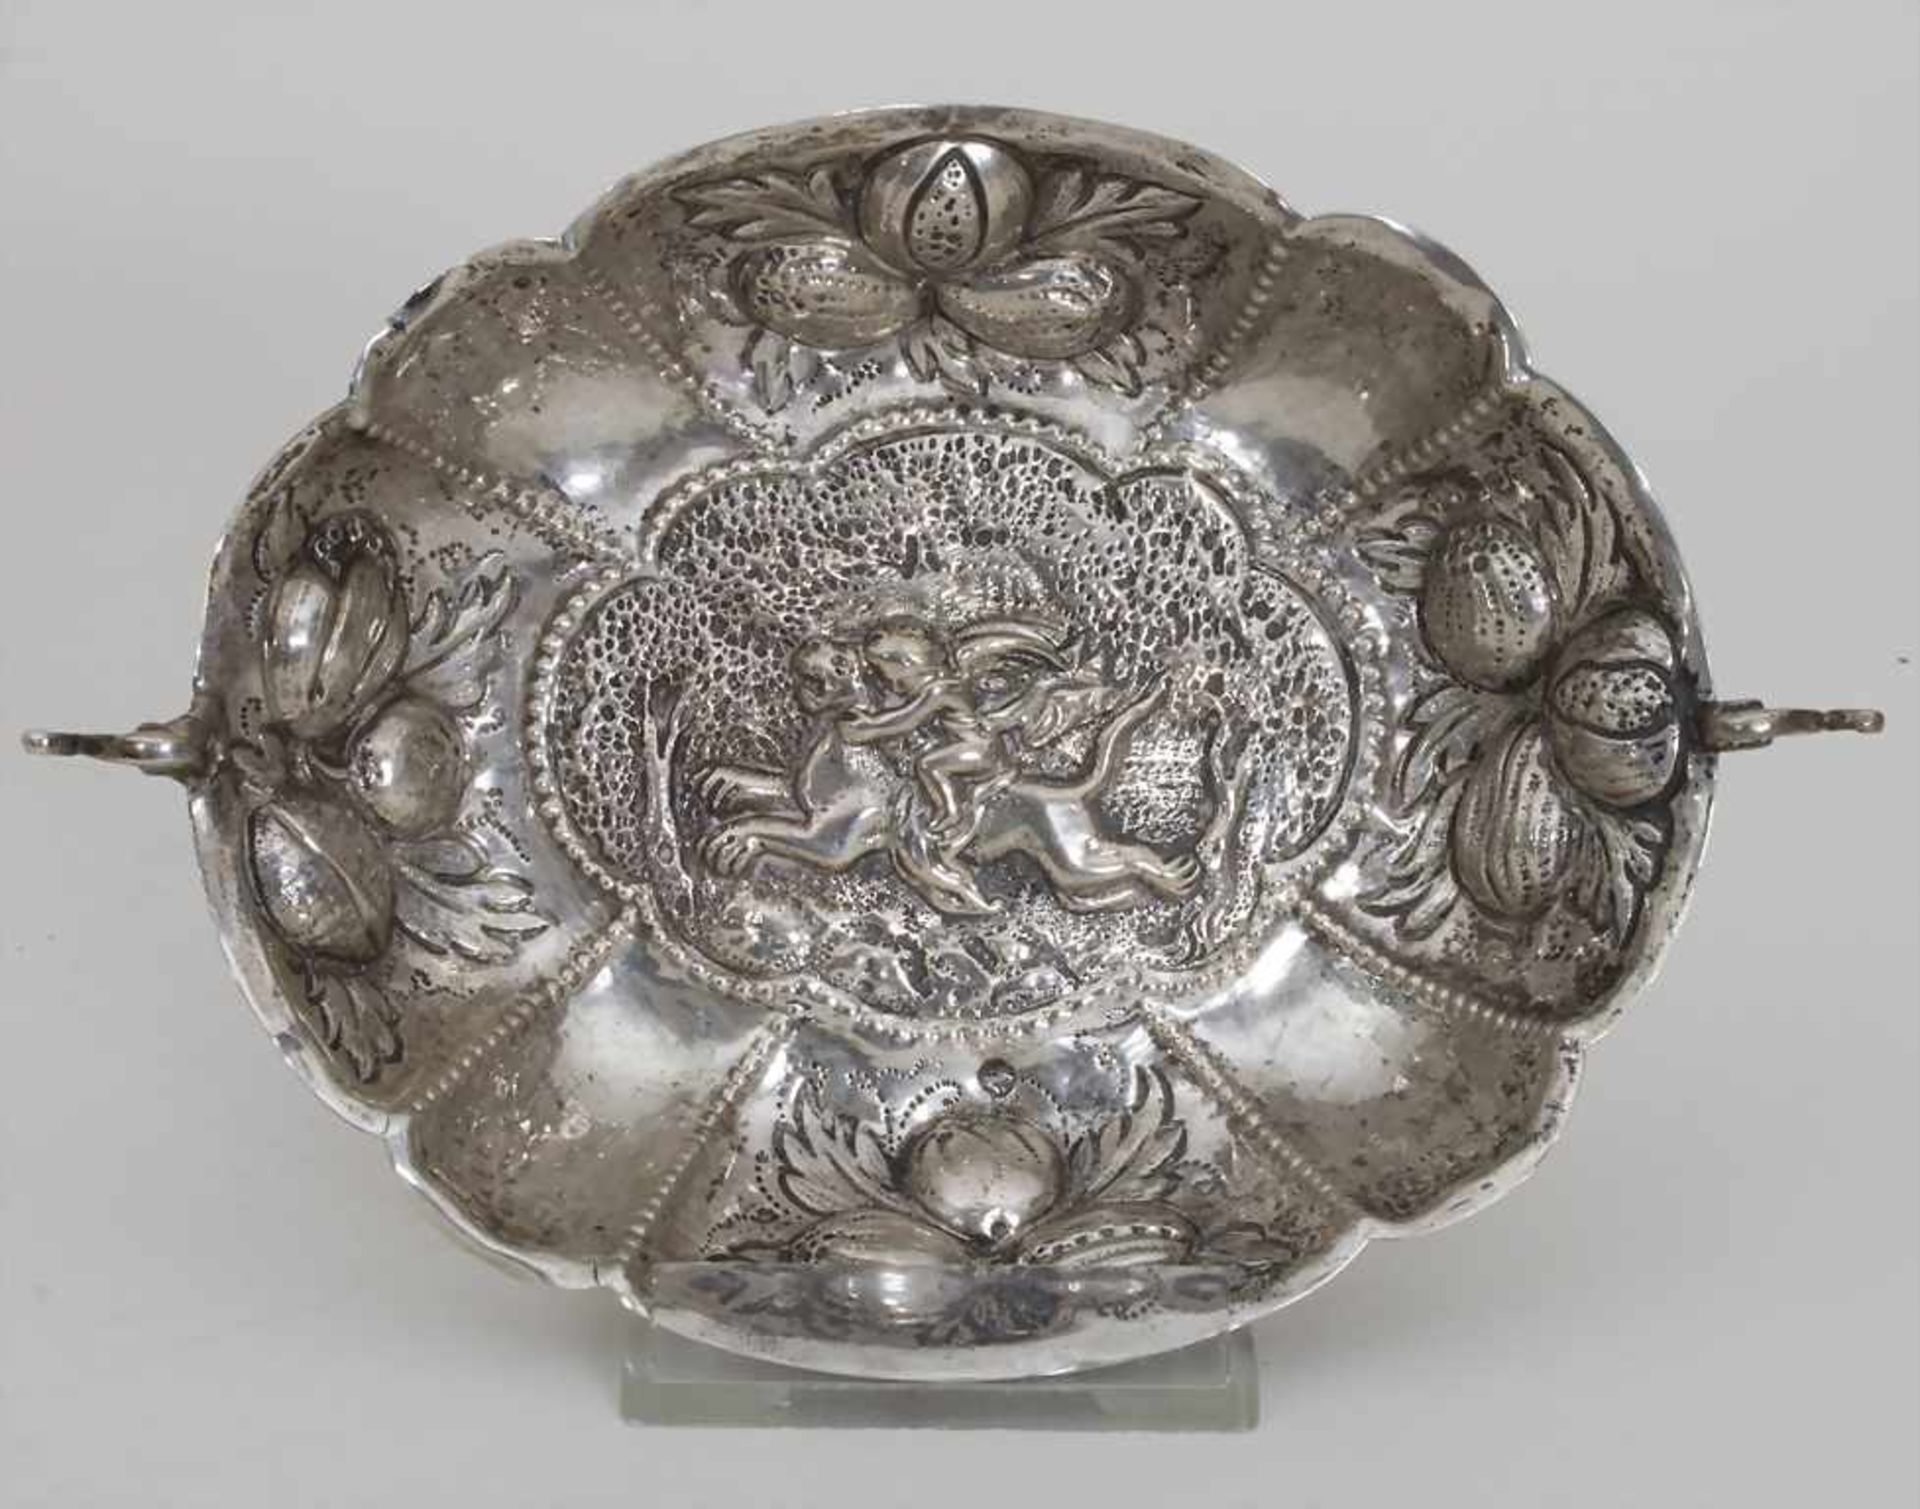 Etrog Schale / An Etrog bowl, Nürnberg, 18. Jh.Material: Silber 13 Lot,Punzierung: Beschaumarke,